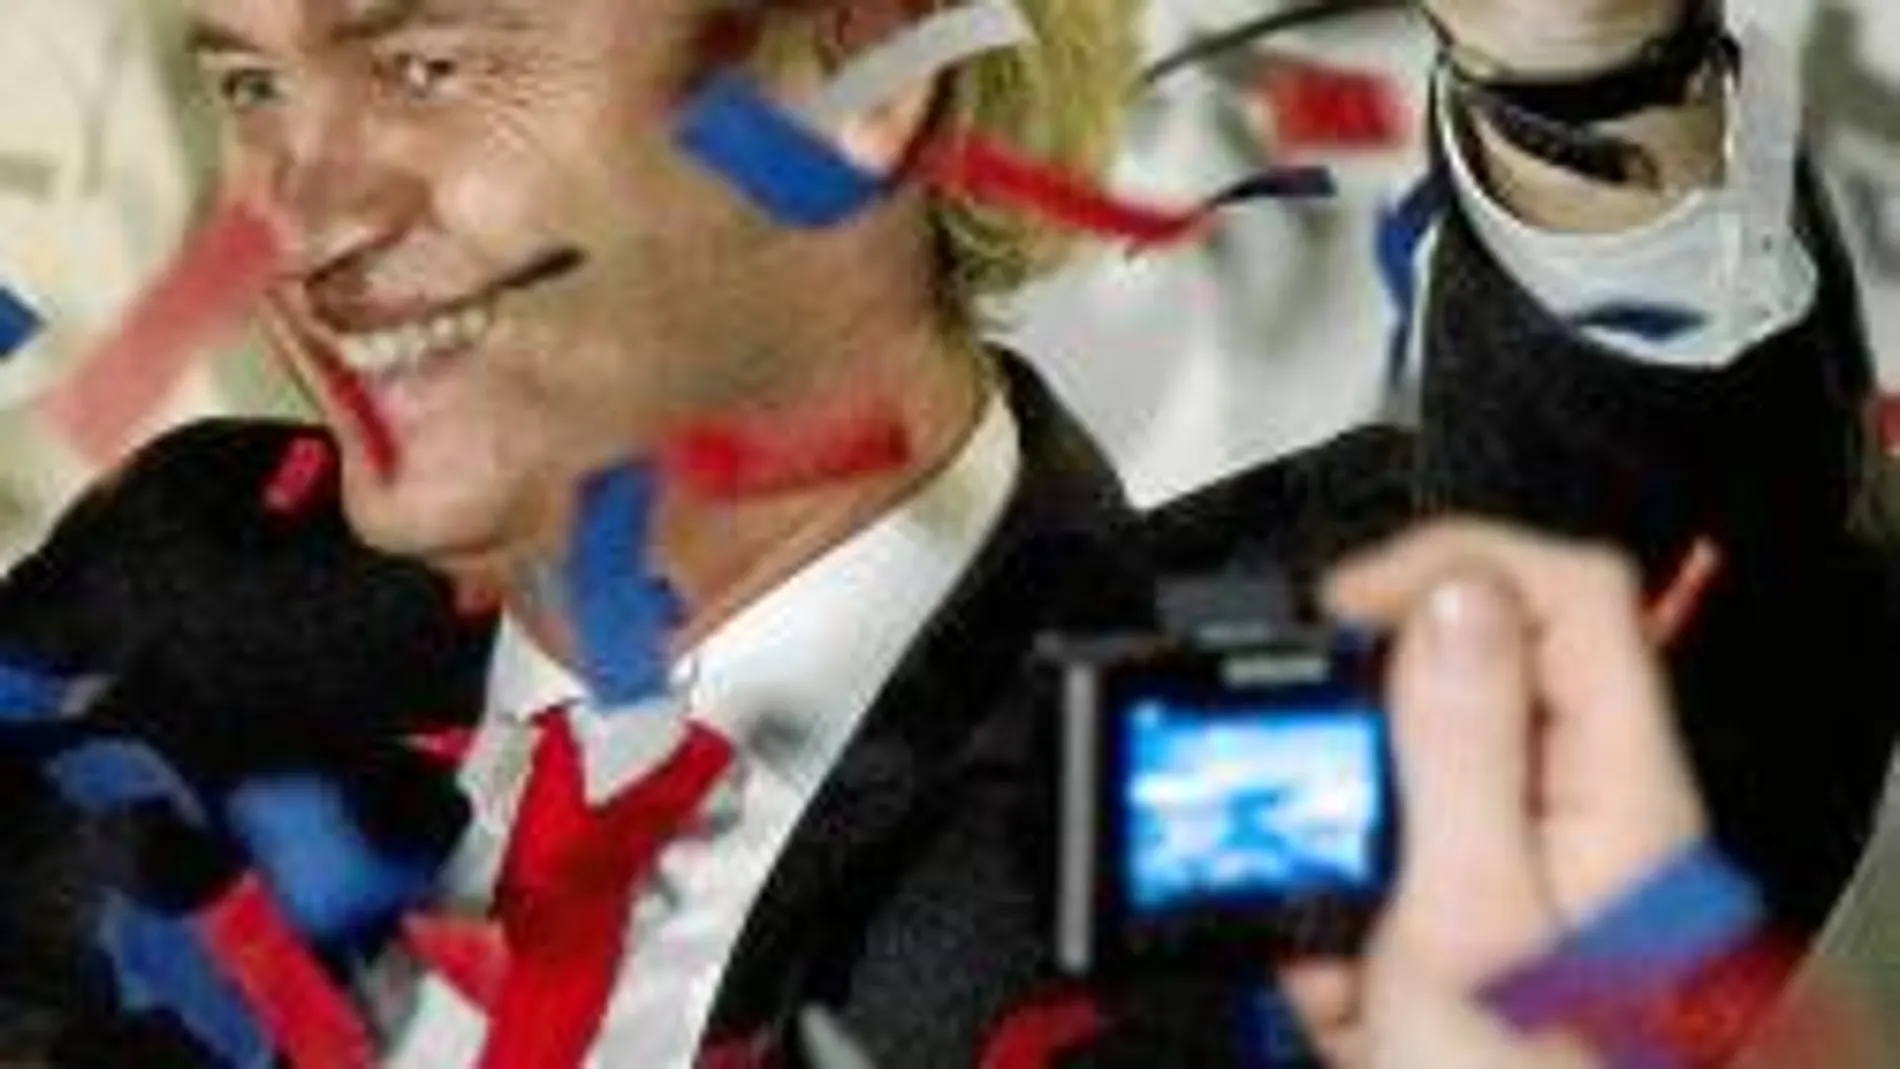 Geert Wilders, líder de la extrema derecha xenófoba holandesa, celebra los buenos resultados de su partido, que ha sumado 15 escaños más